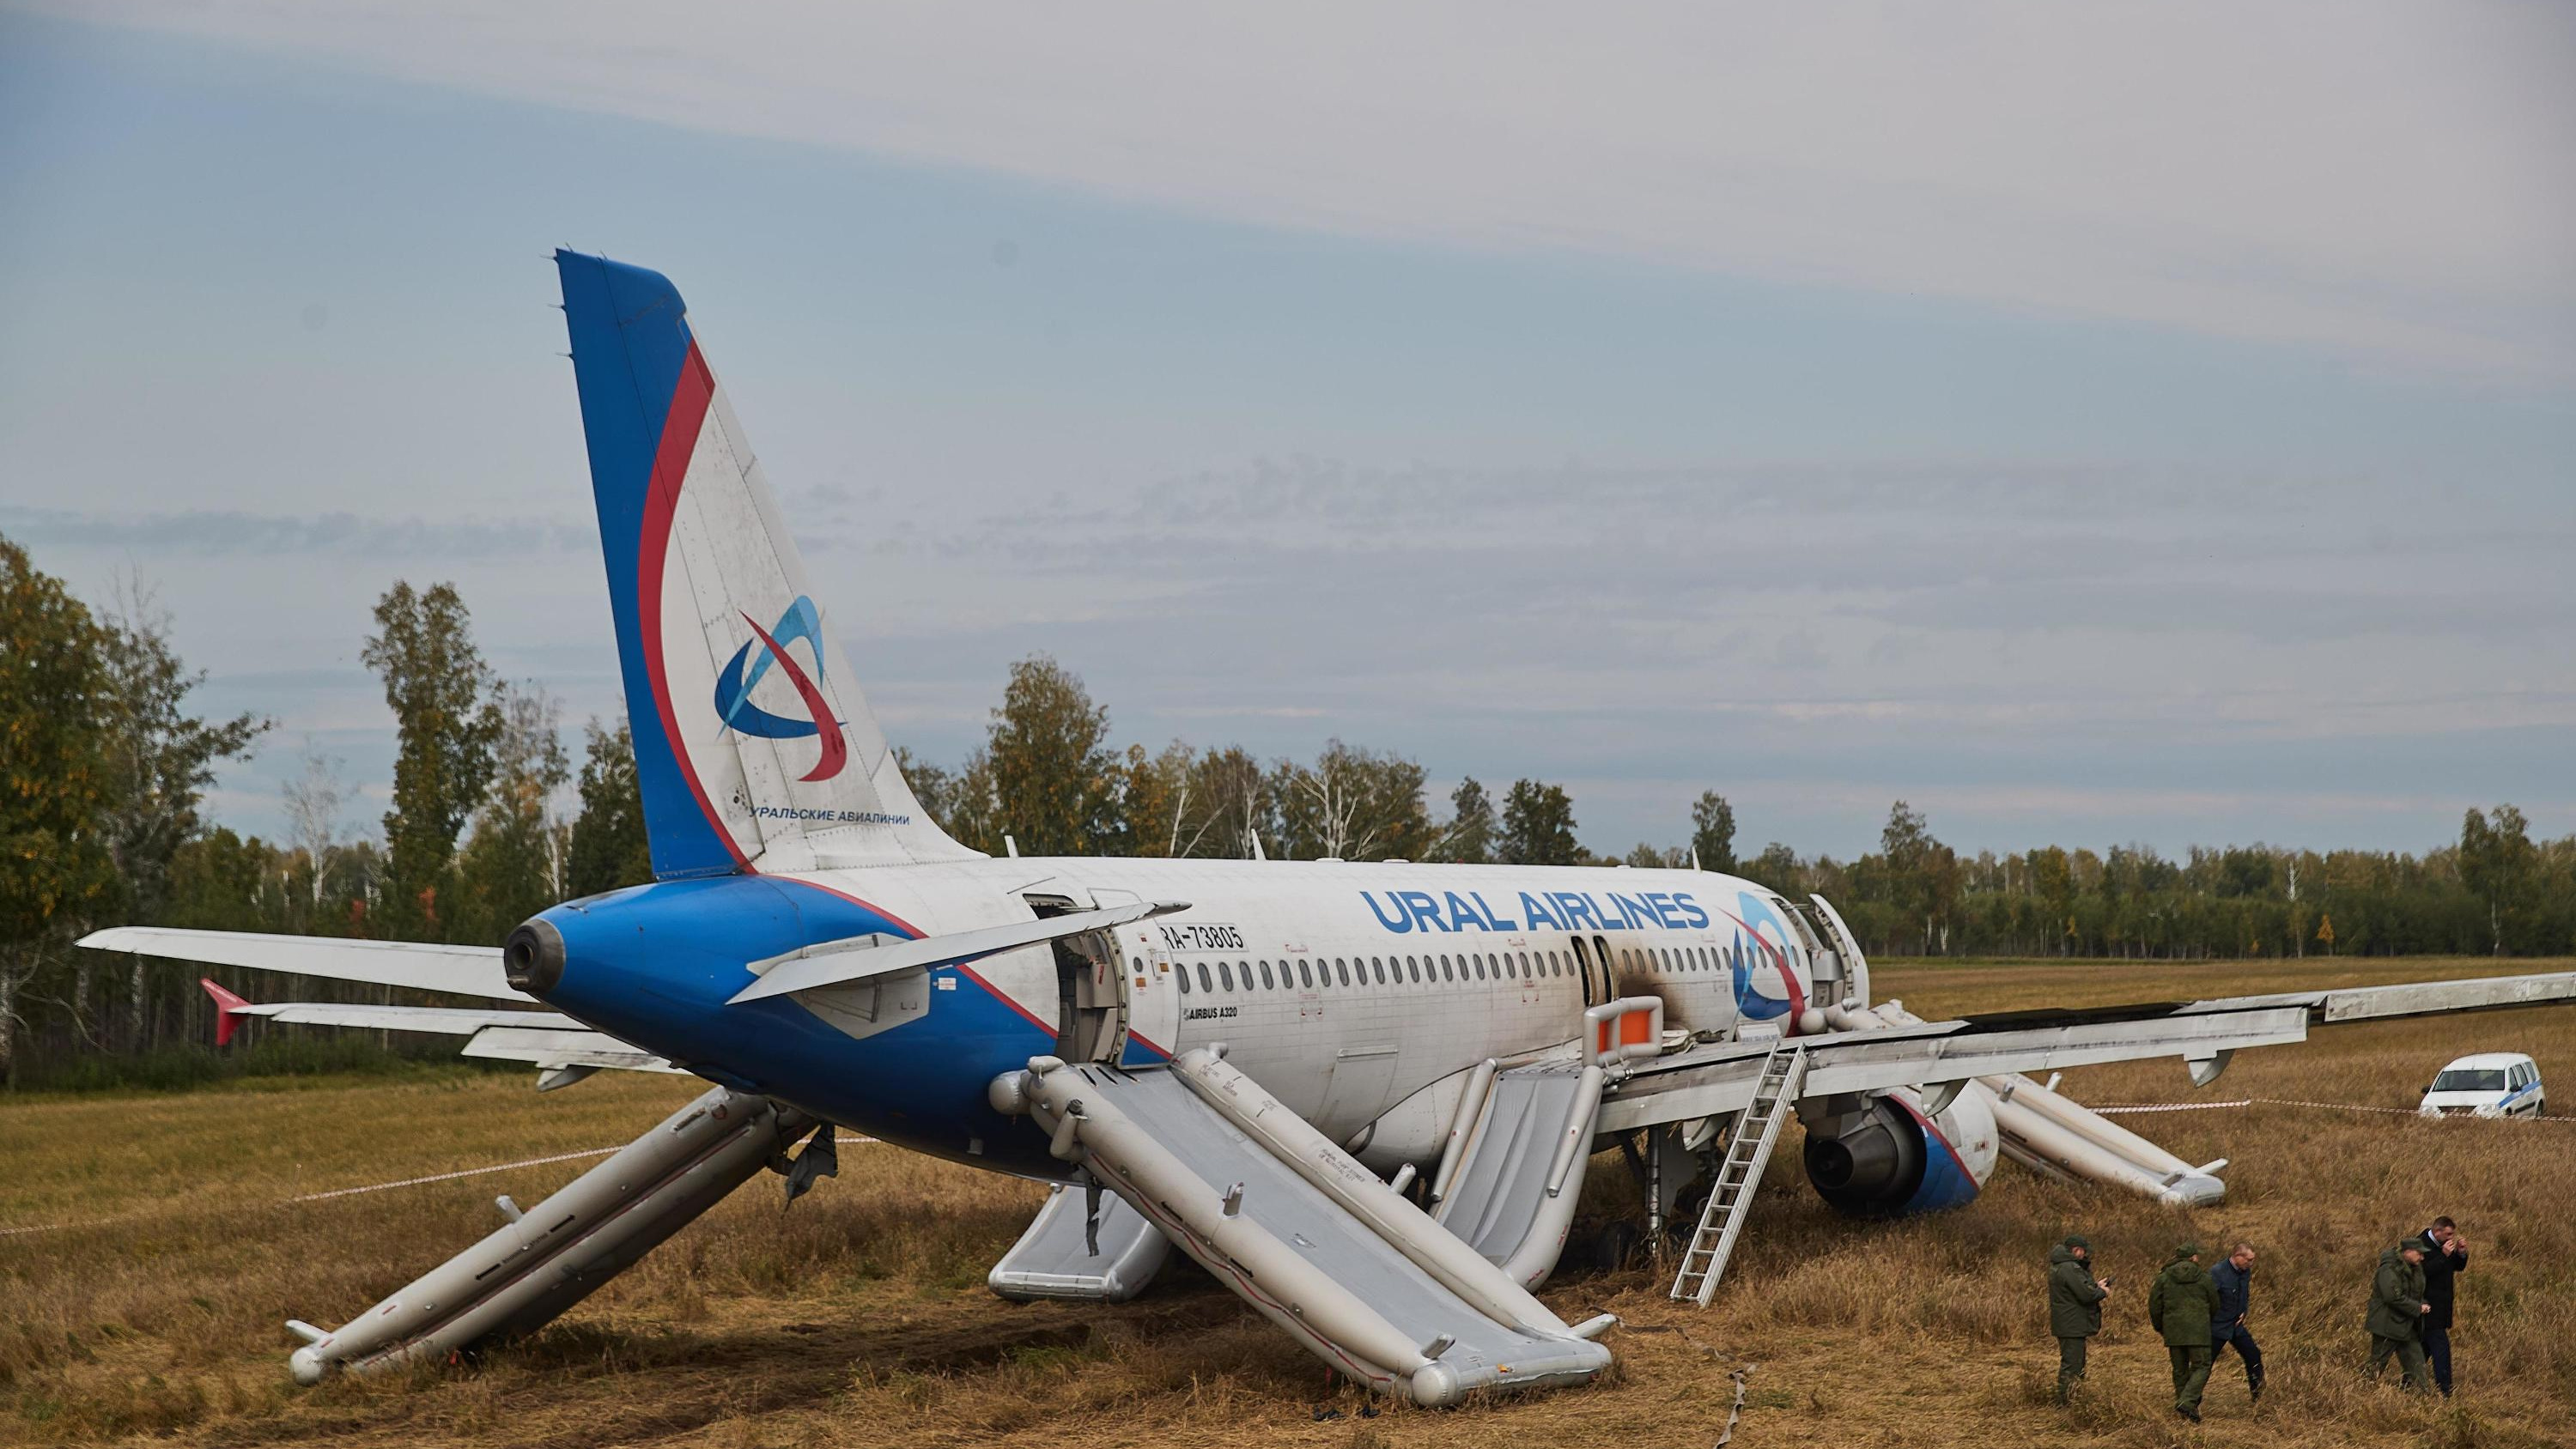 «Топлива хватает нам до Новосибирска?»: появилась расшифровка переговоров пилотов, посадивших самолет в поле